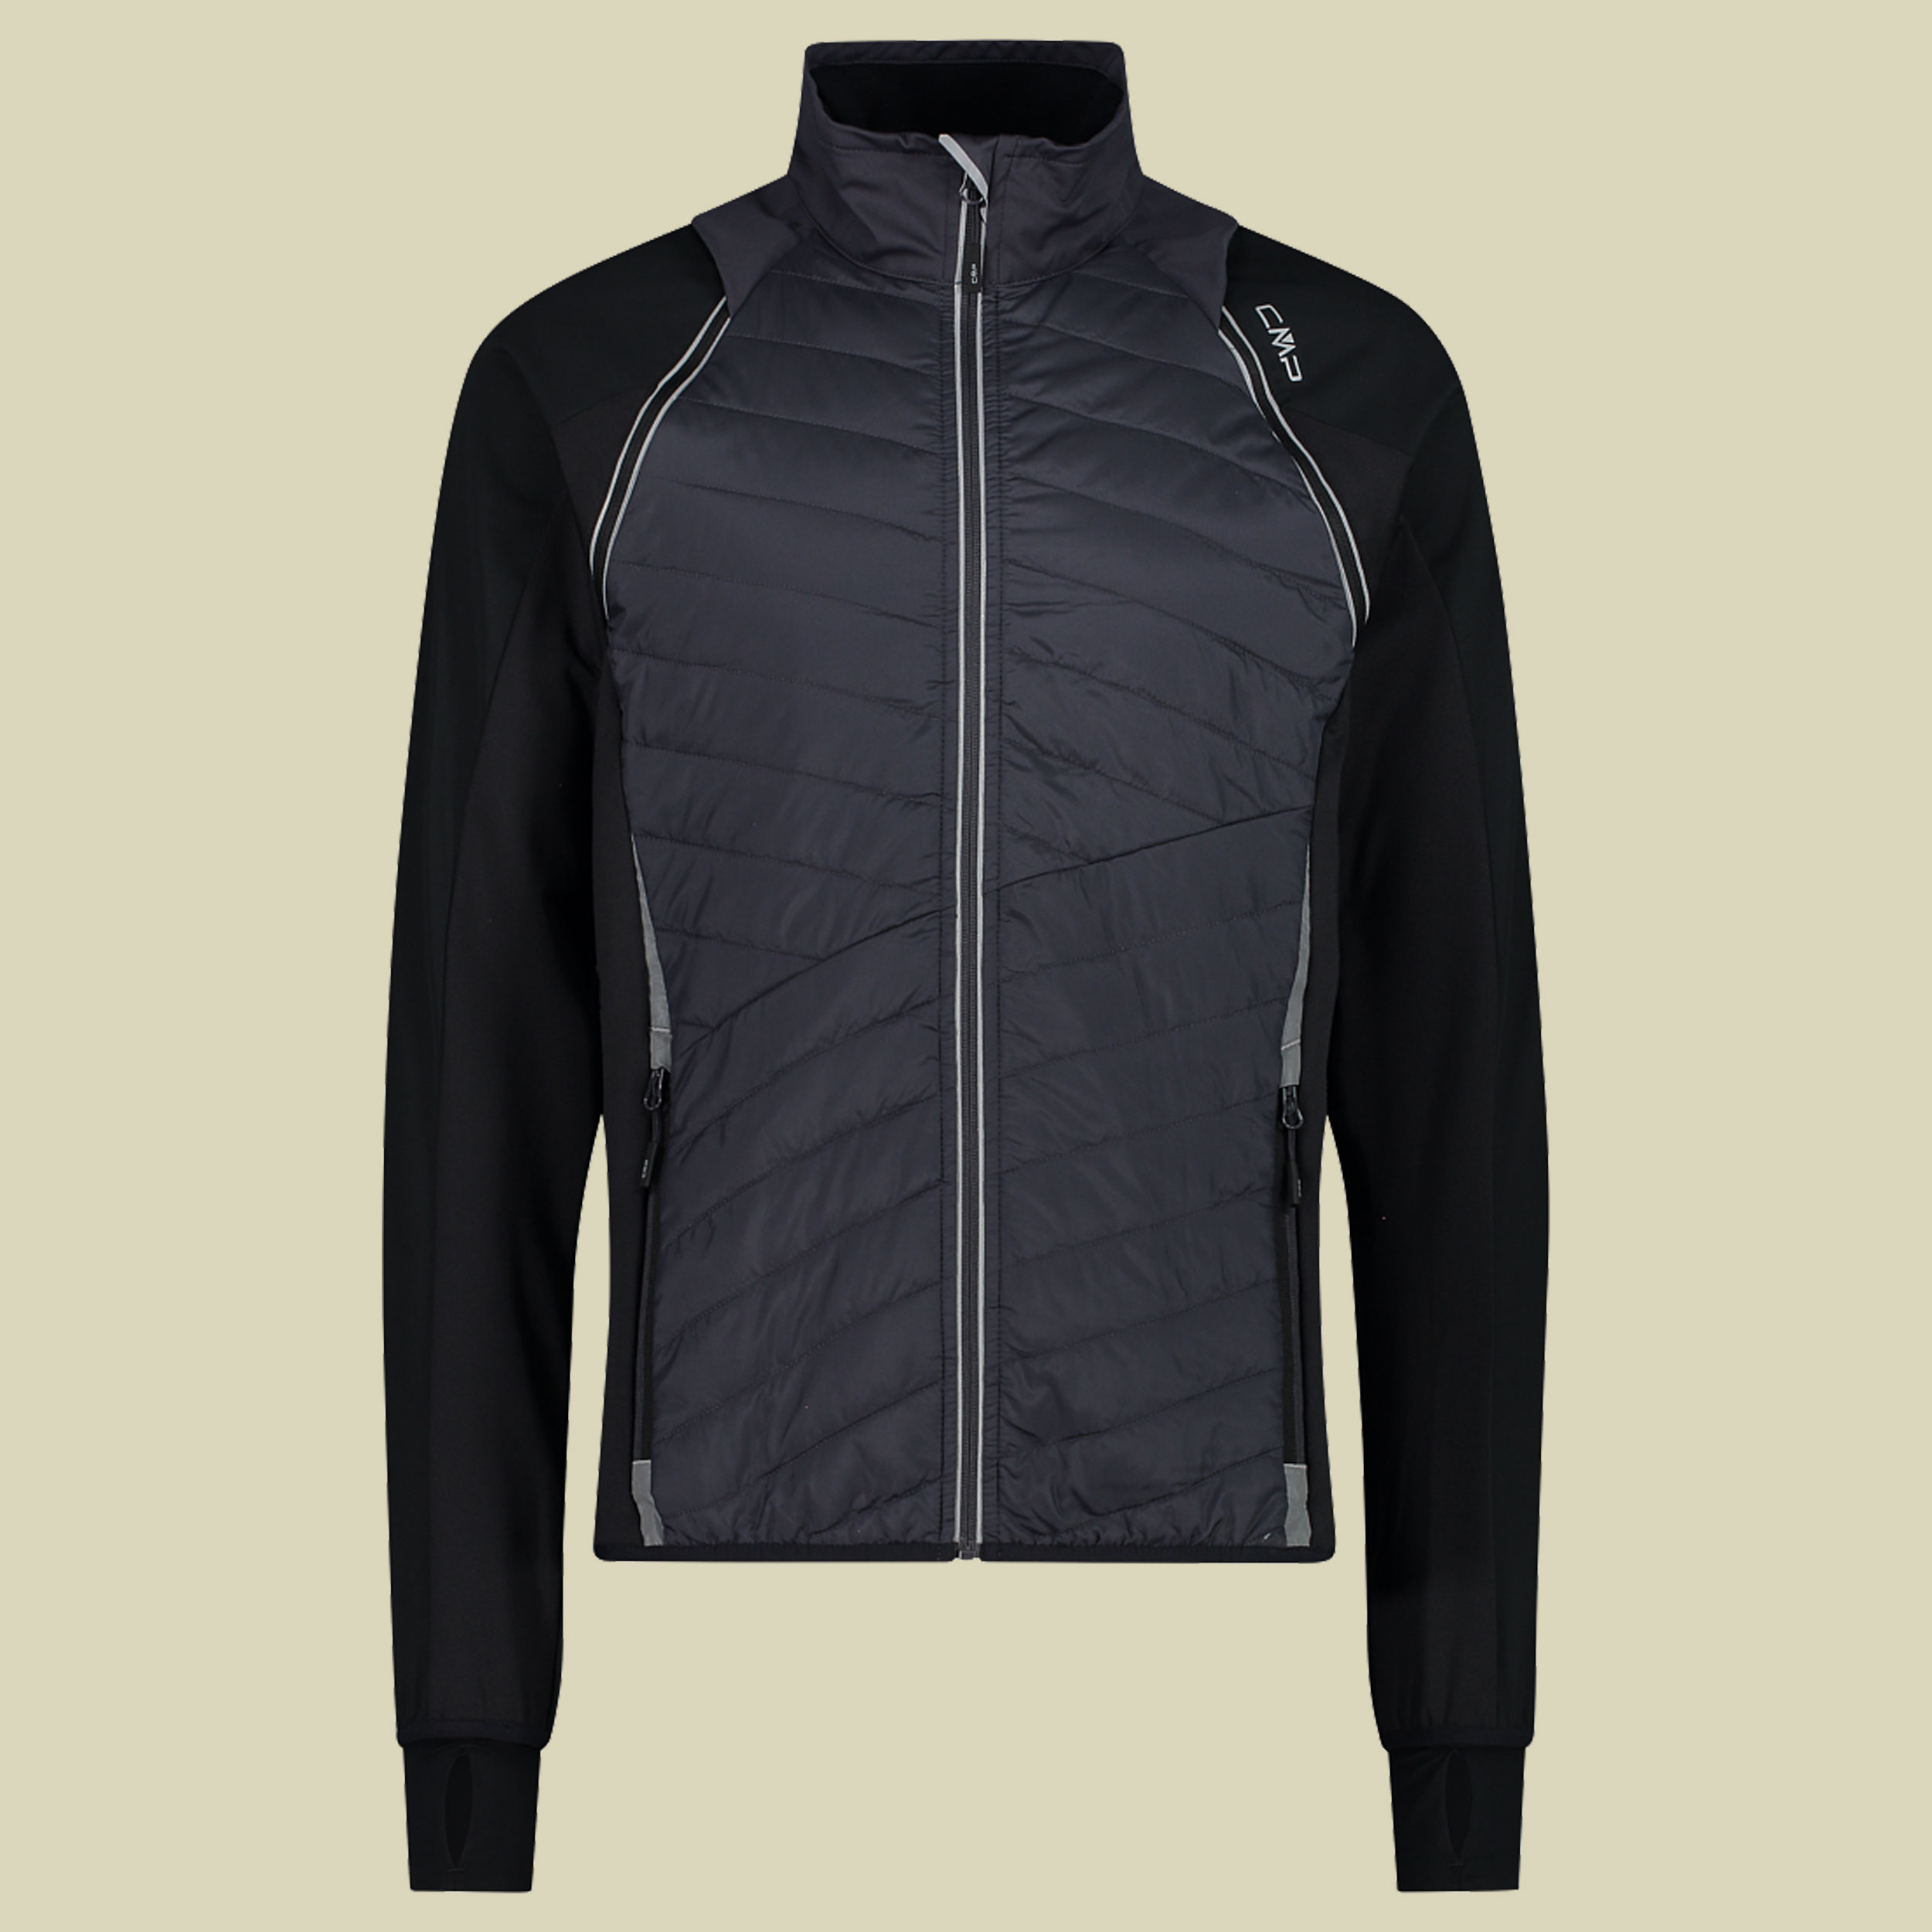 Man Jacket detachable Sleeves 30A2647 Größe 56 Farbe U423 antracite